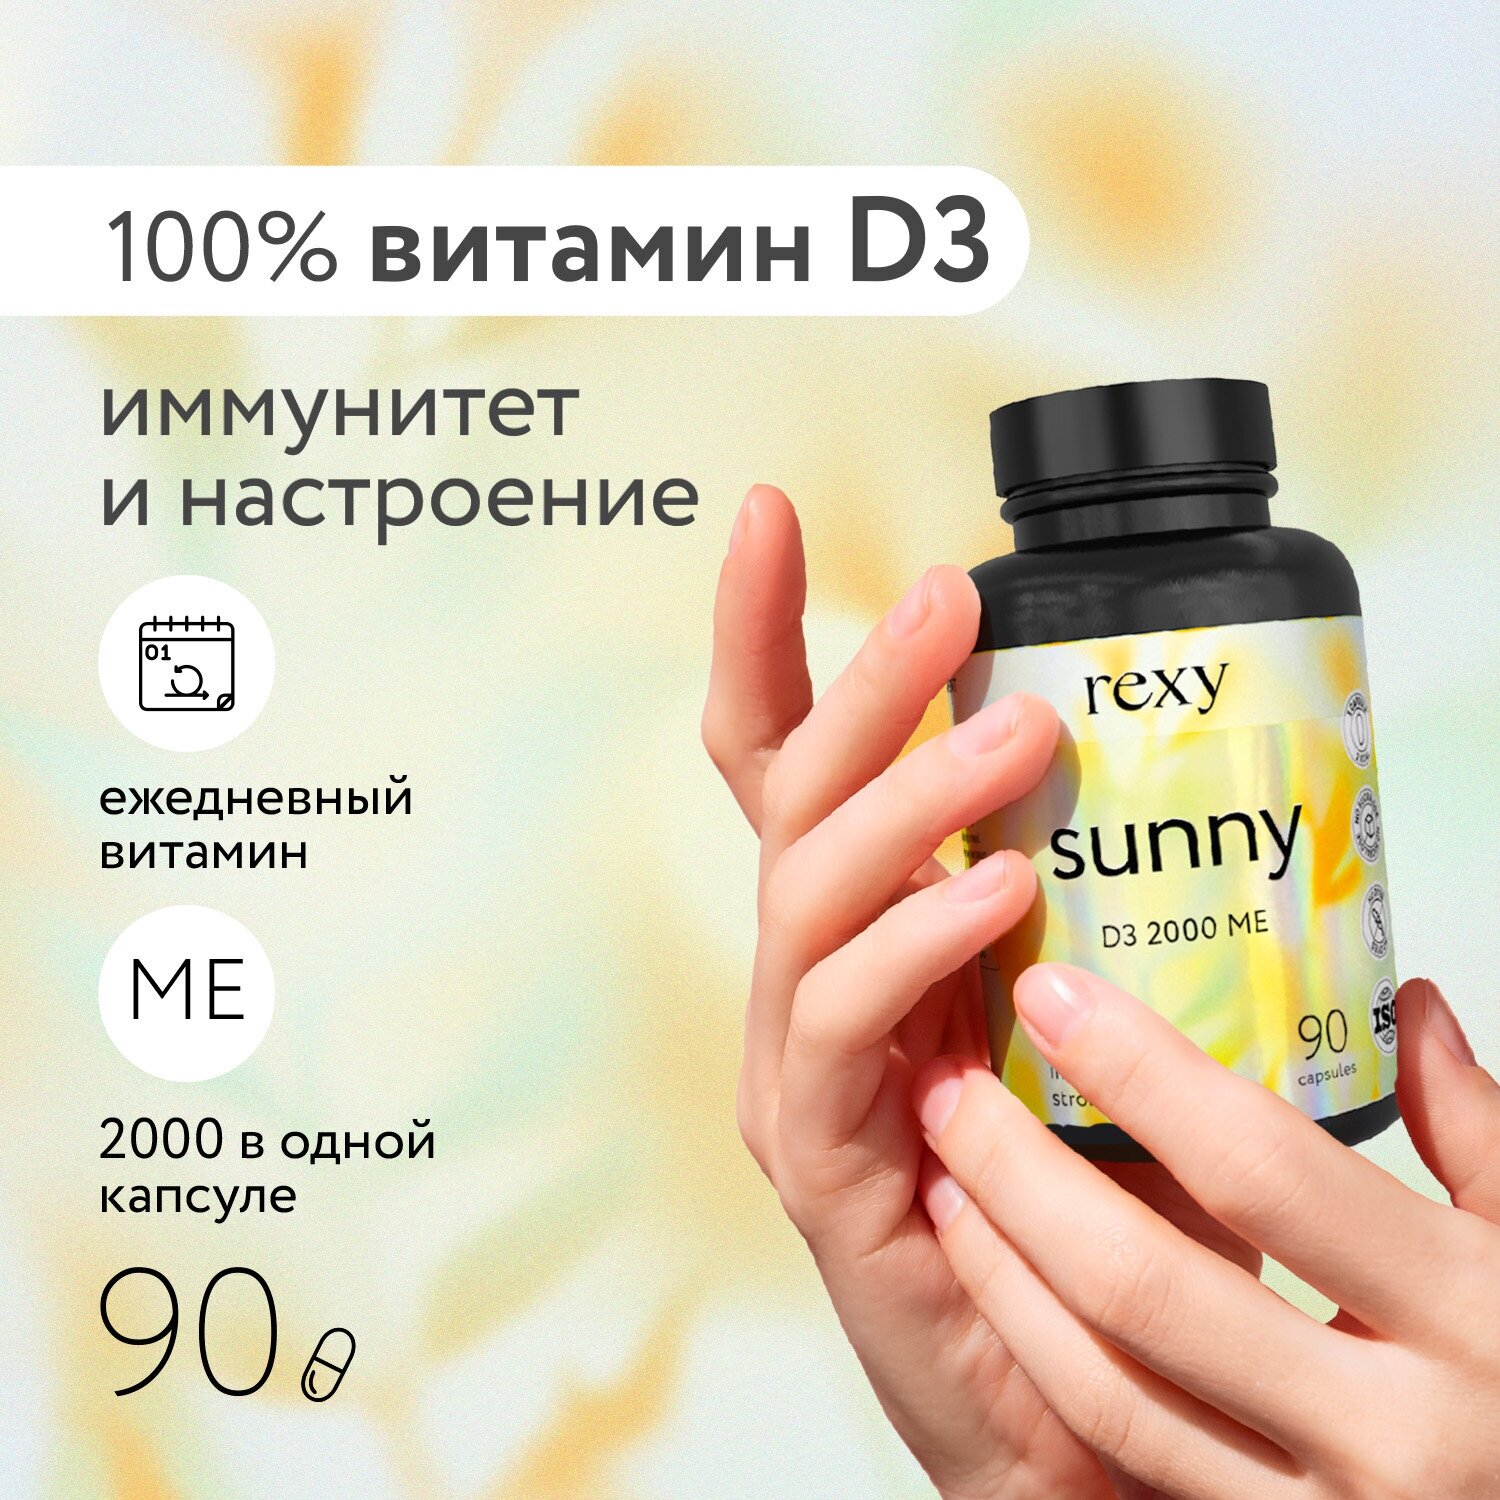 Витамин Д3 D3 2000 ME витаминный комплекс для иммунитета метаболизма нервной и сердечно-сосудистой системы 90 ш